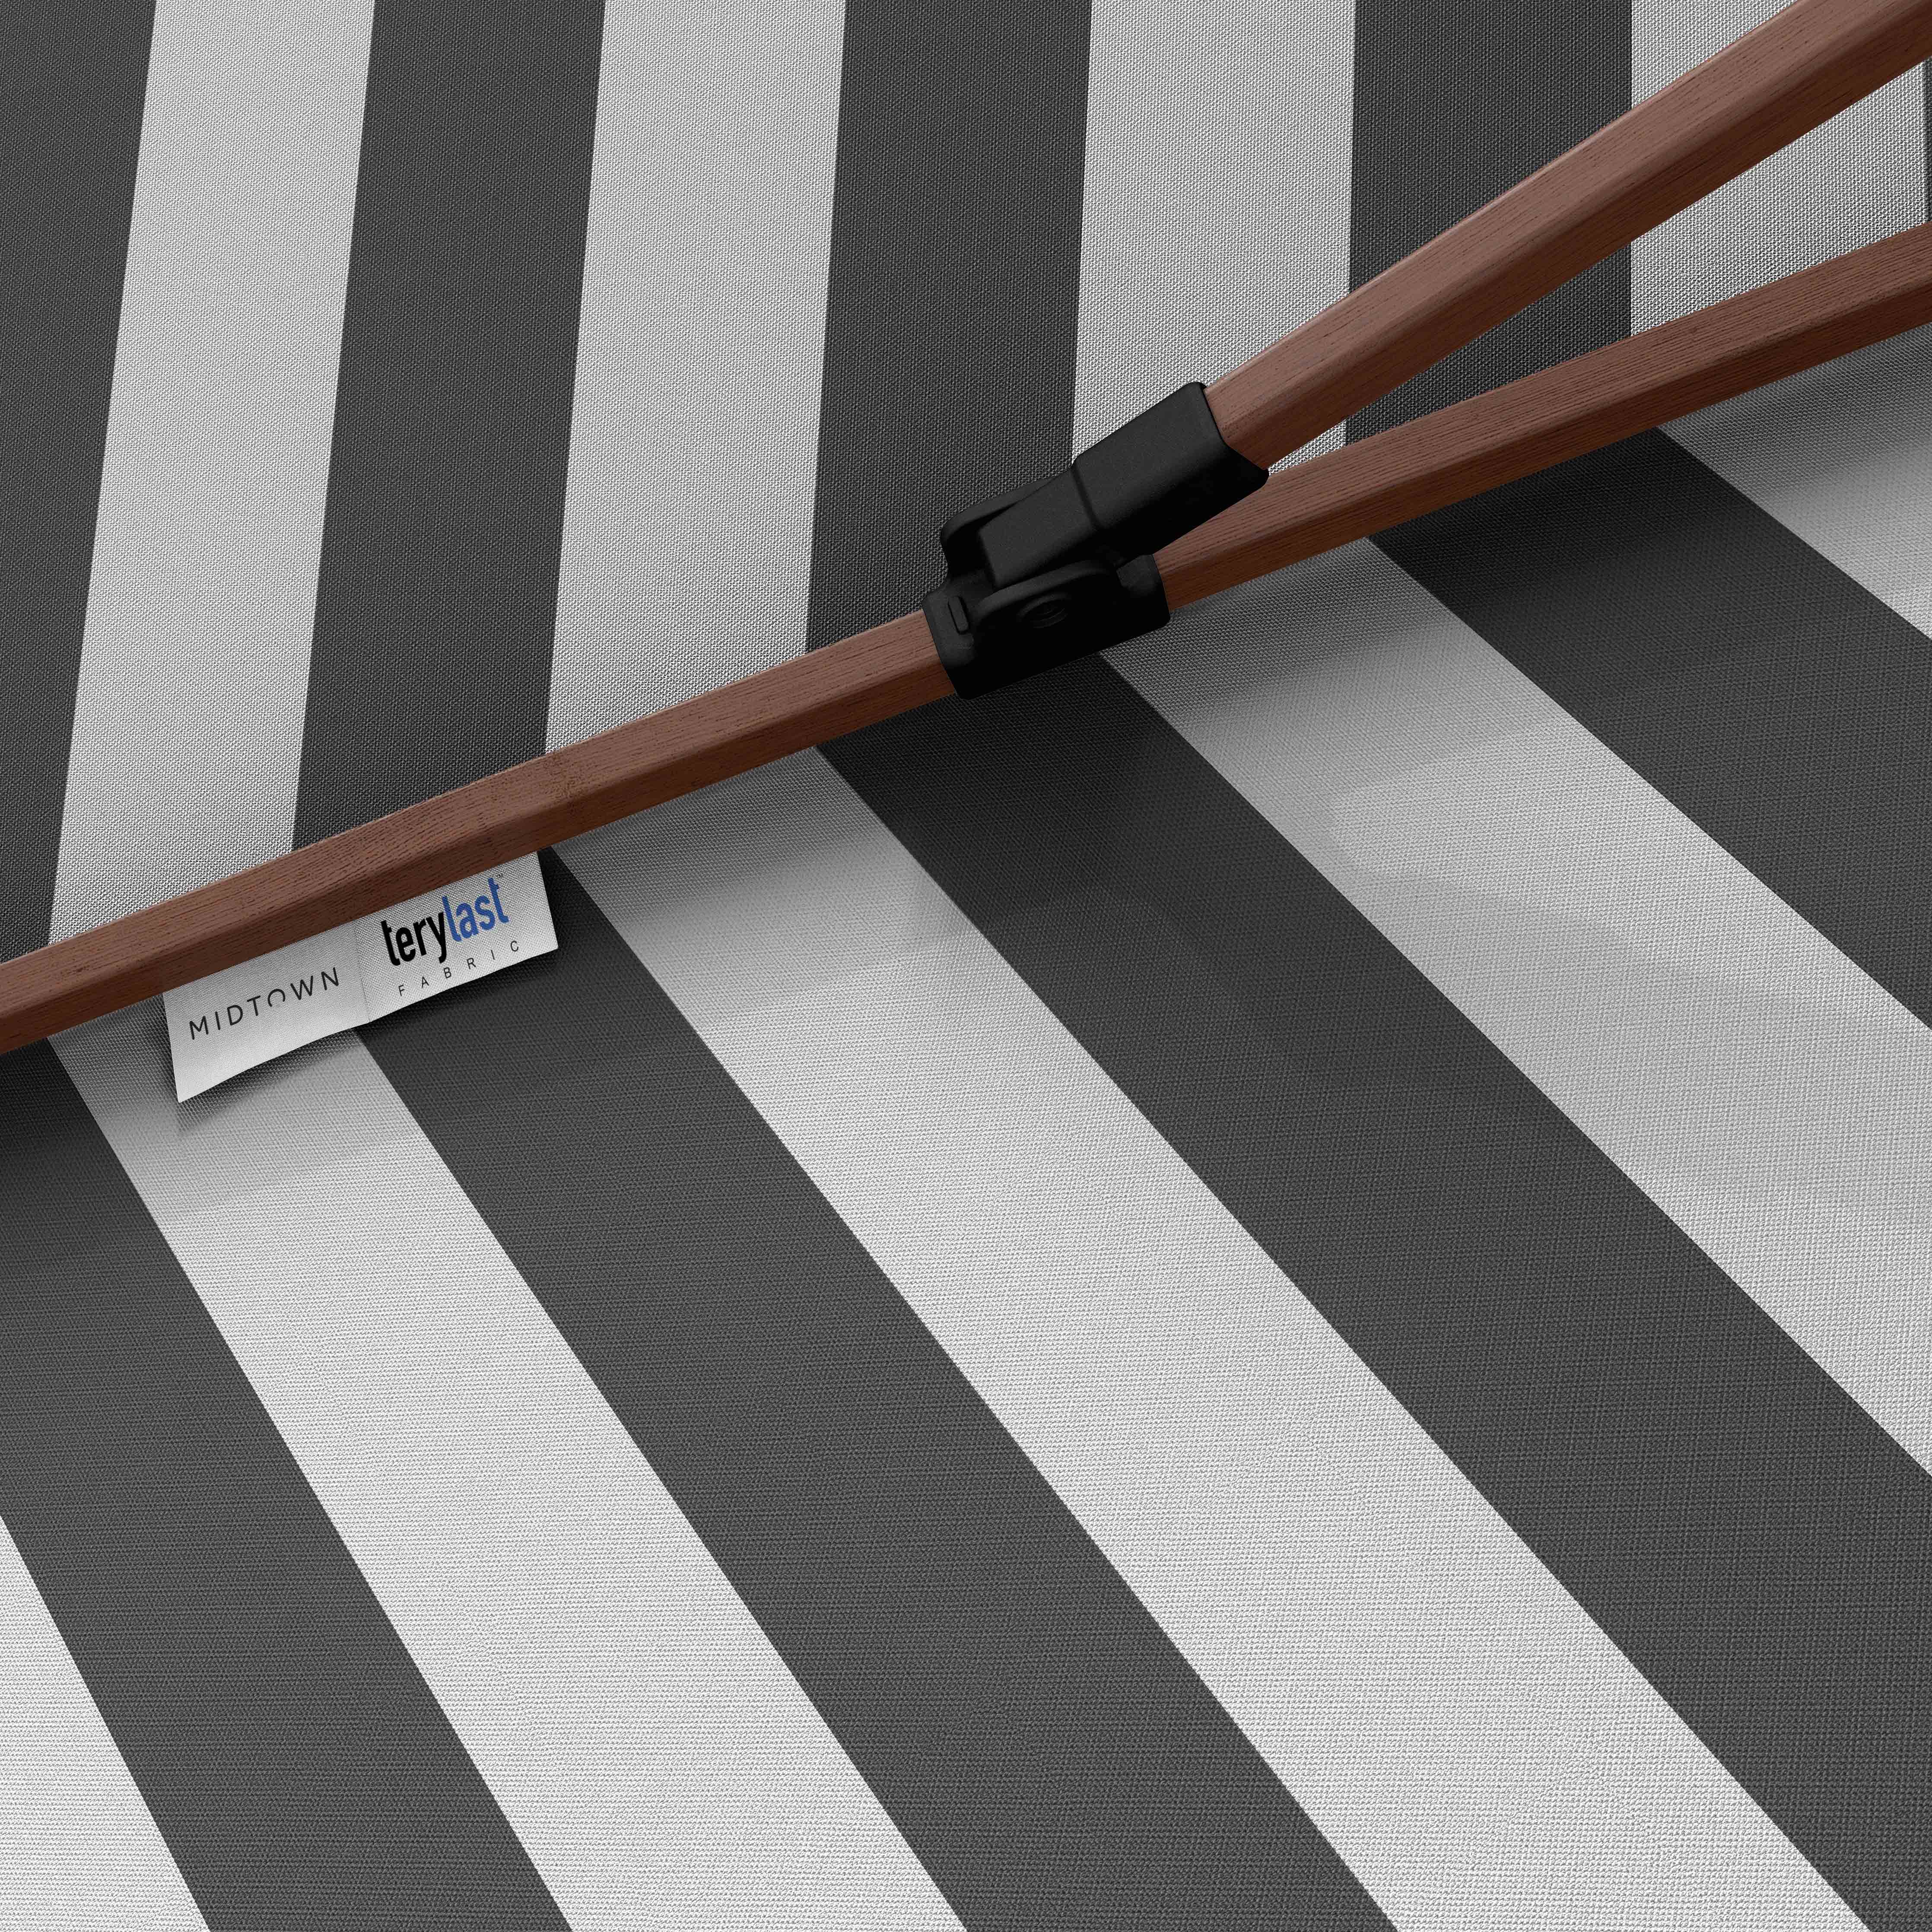 The Wooden™ - Terylast Matter Stripes